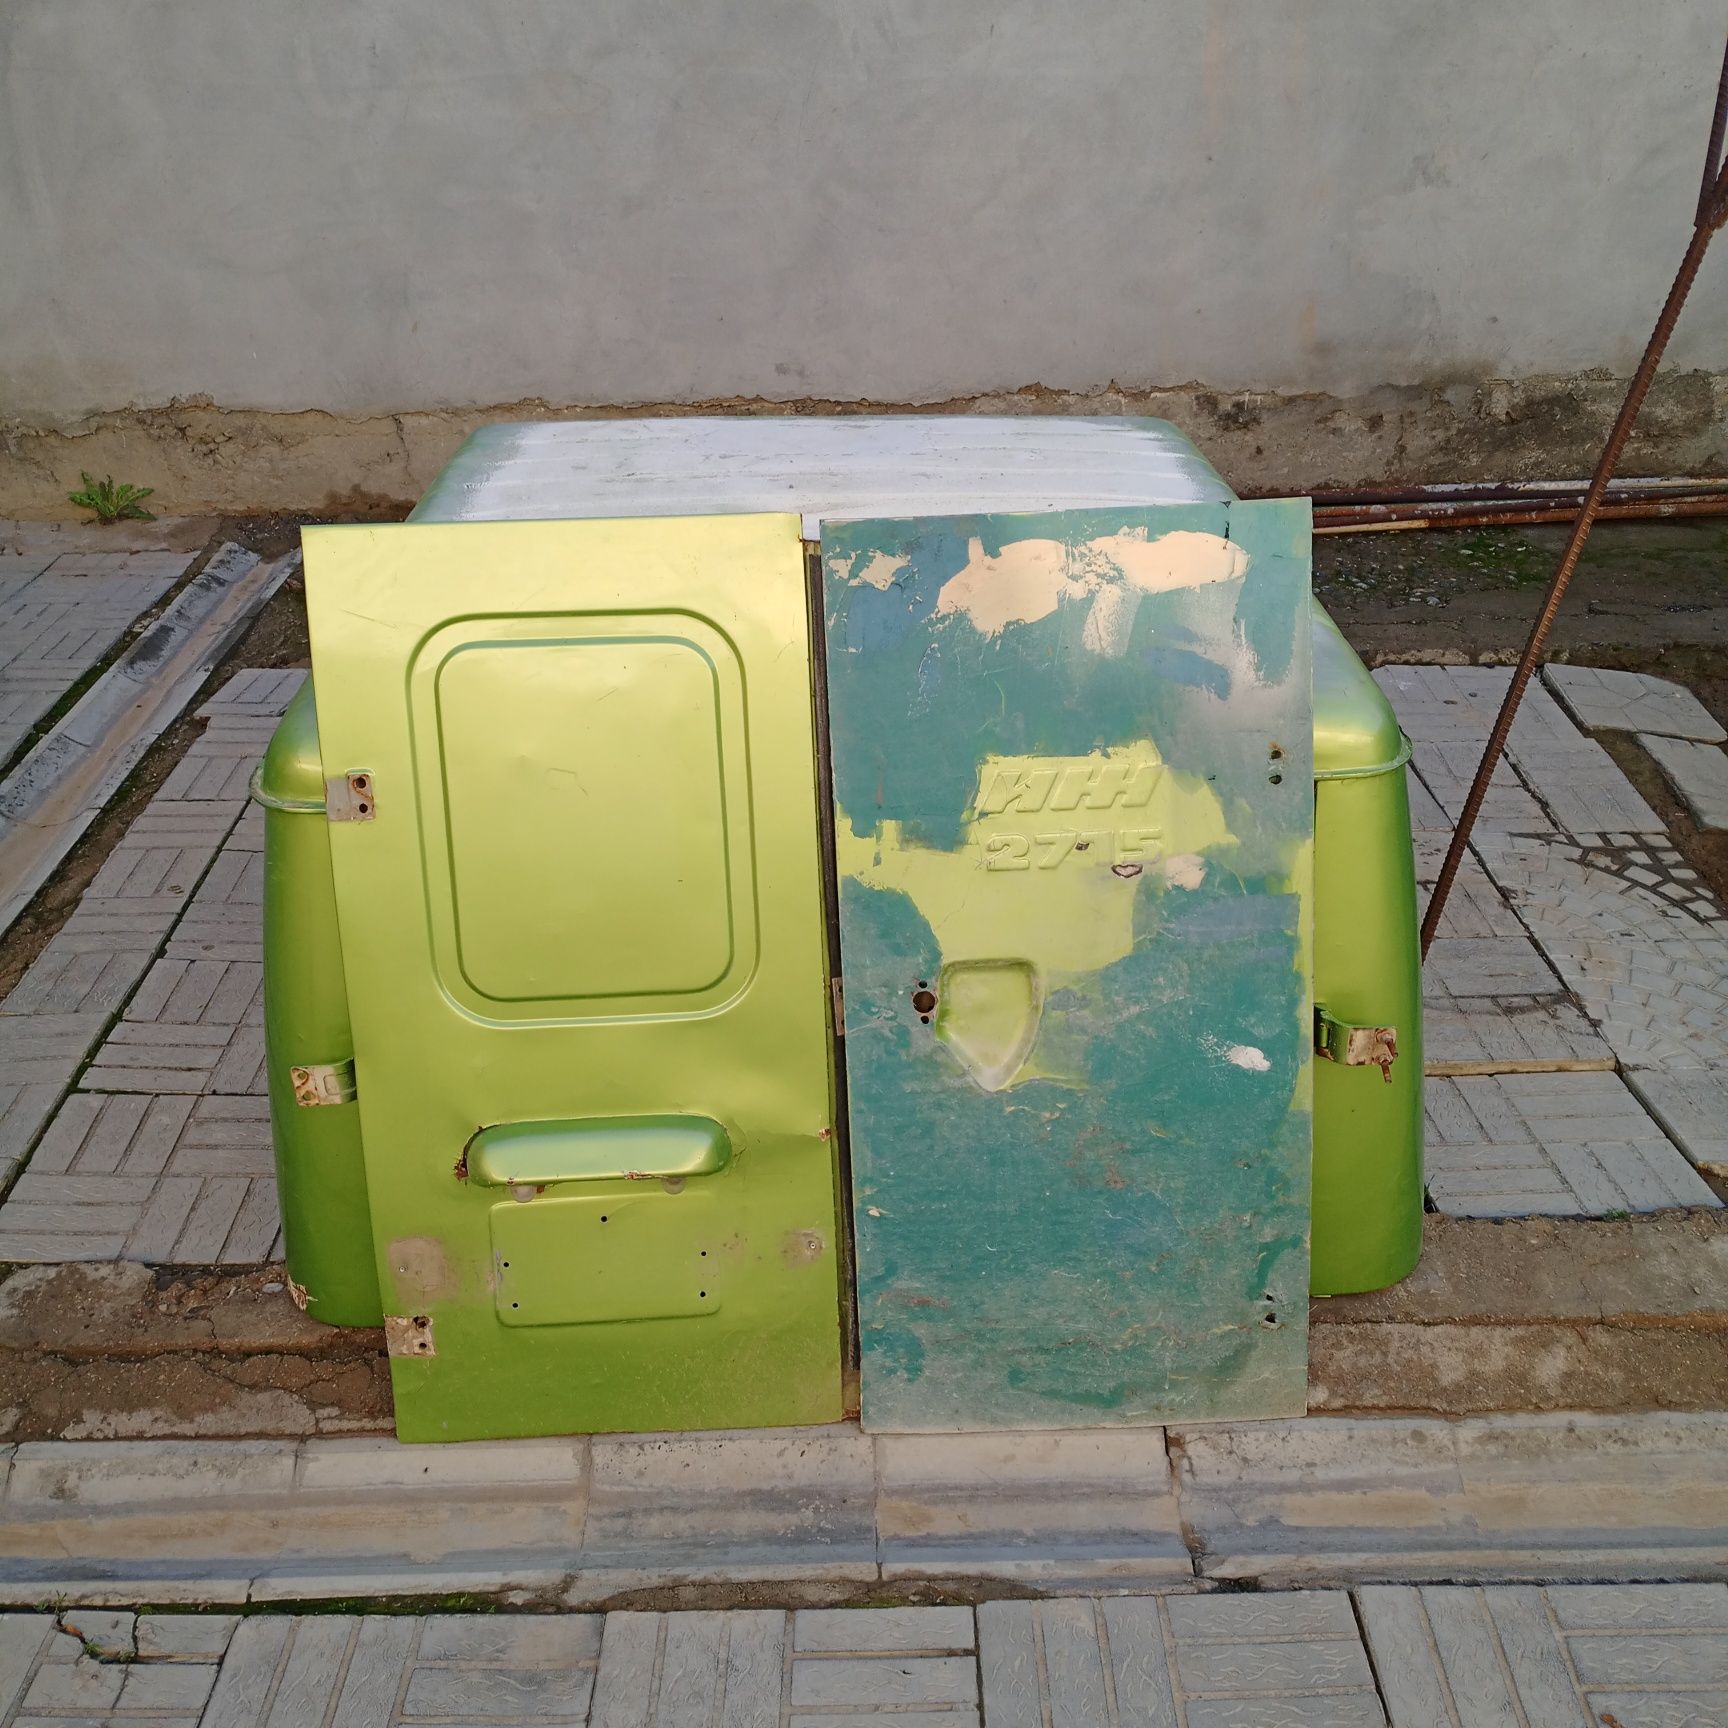 Багаж для москвич перошкавоза